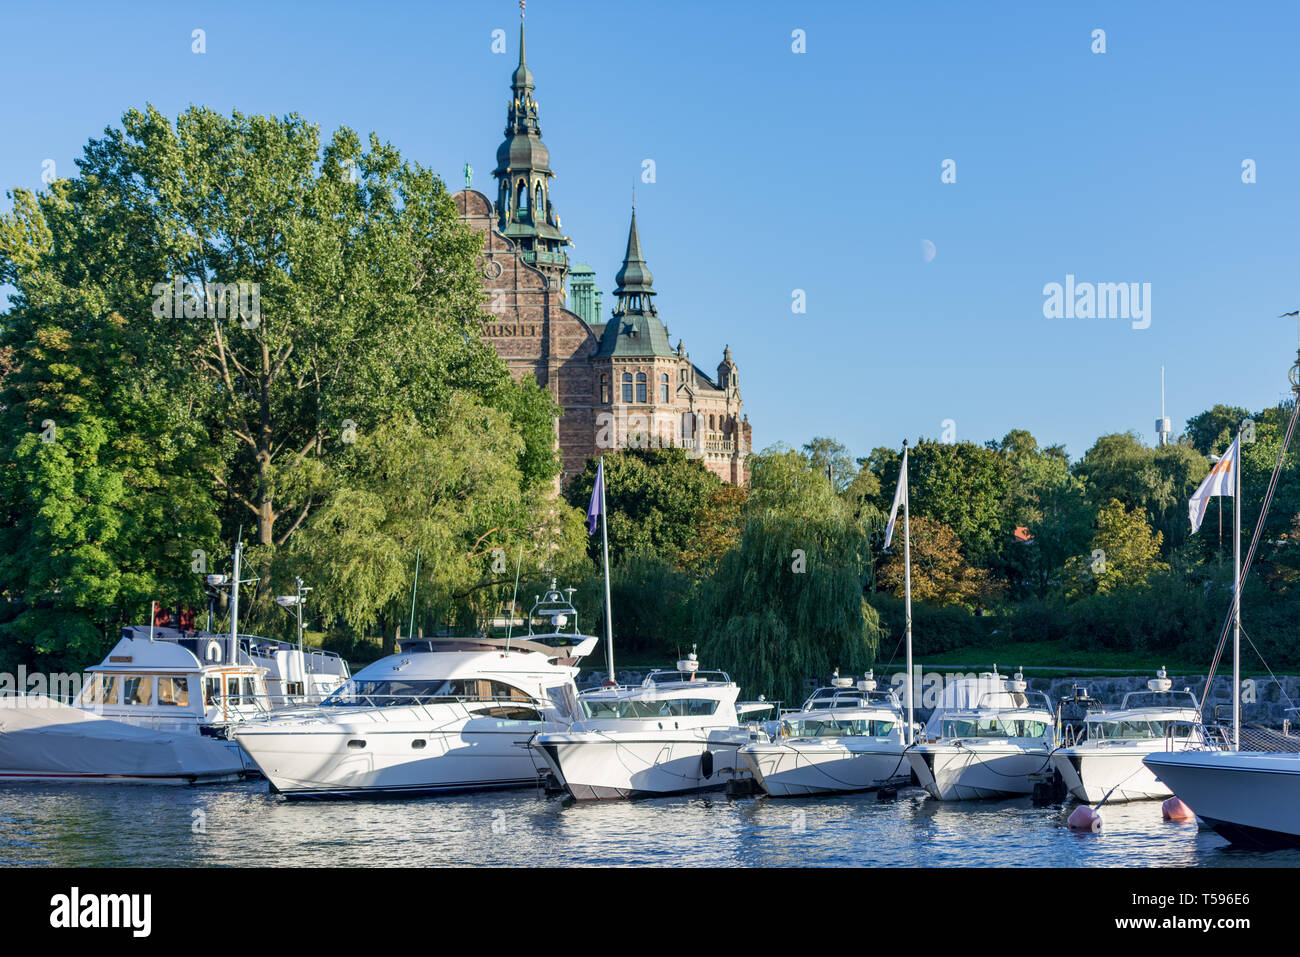 Boats moored on Ladugårdslandsviken in front of the Nordic Museum at Djurgården, Stockholm Stock Photo